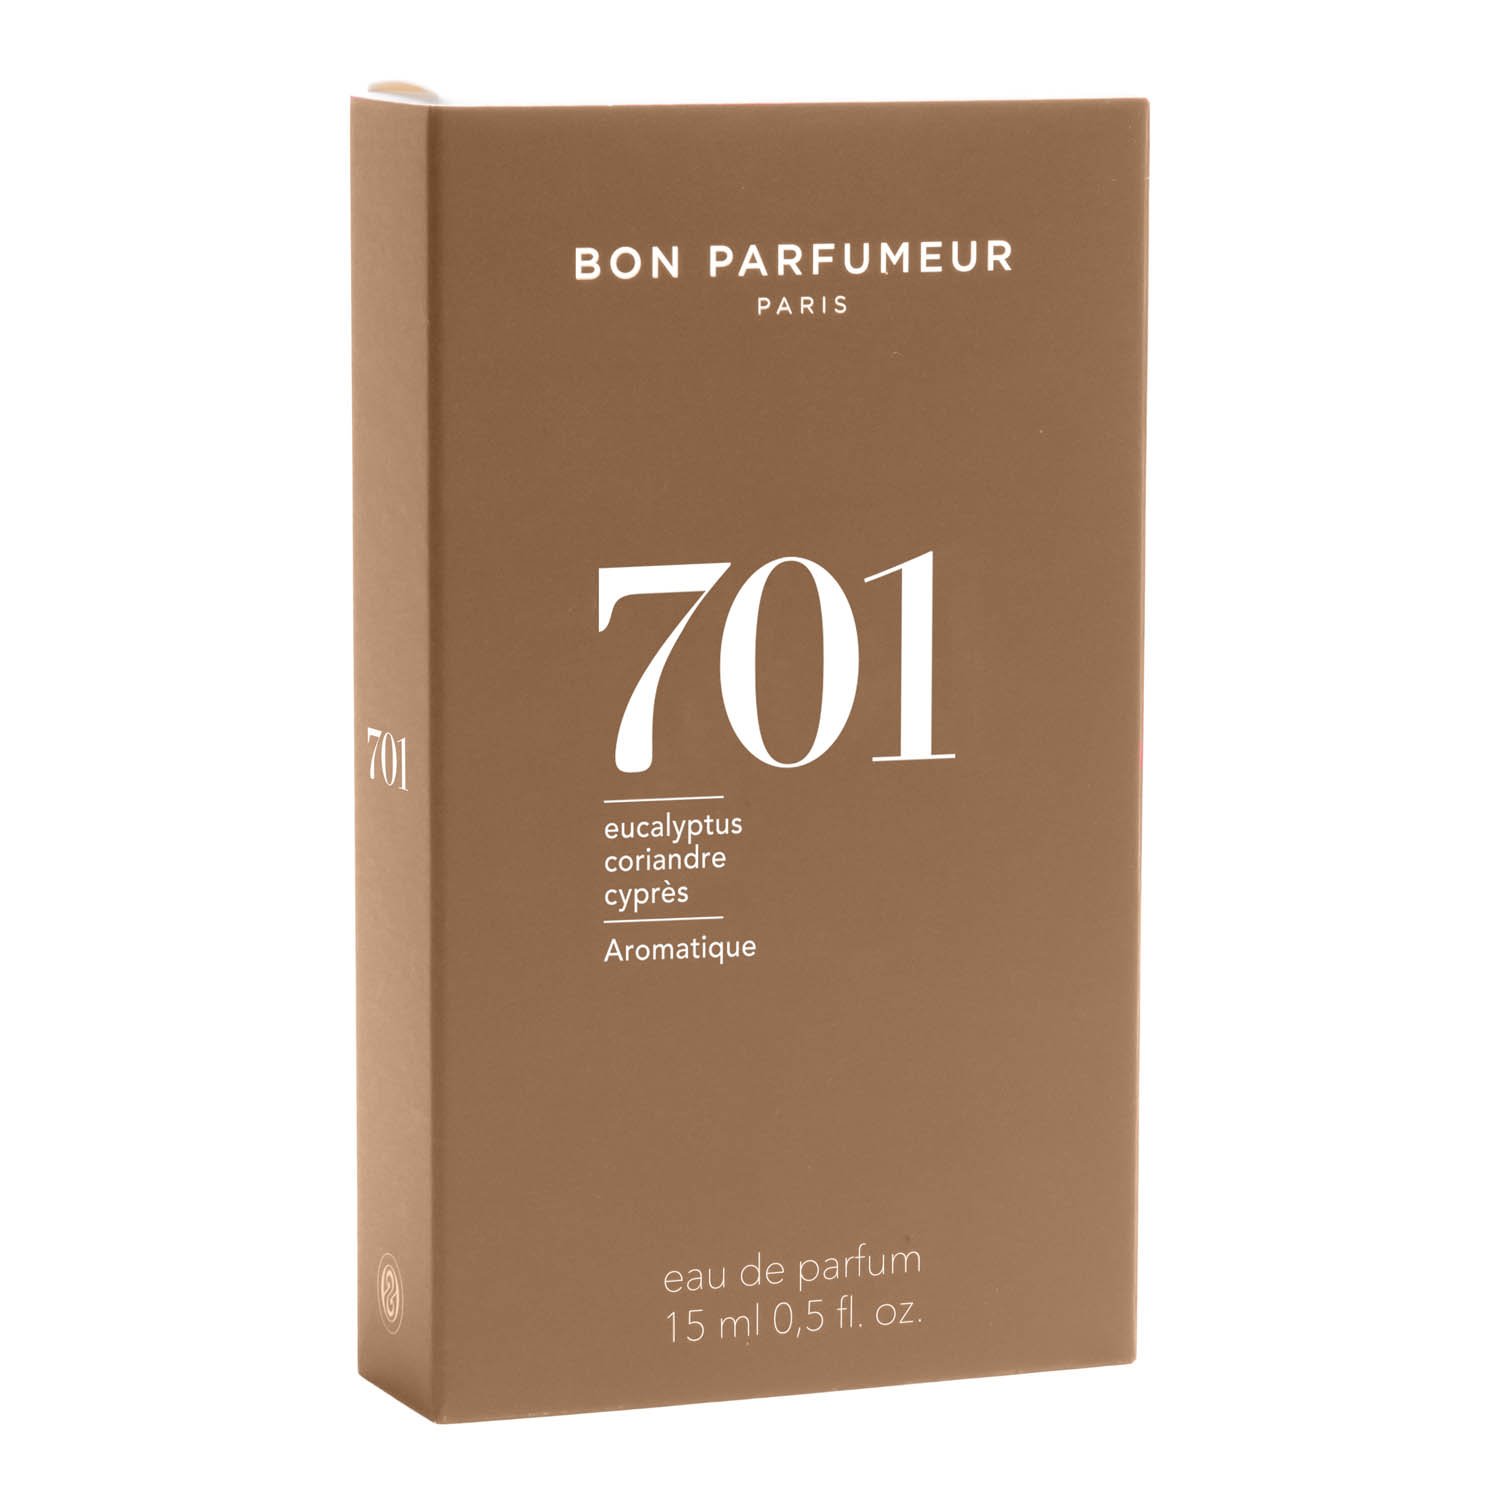 Bon Parfumeur Eau de Parfum 701 15 ml